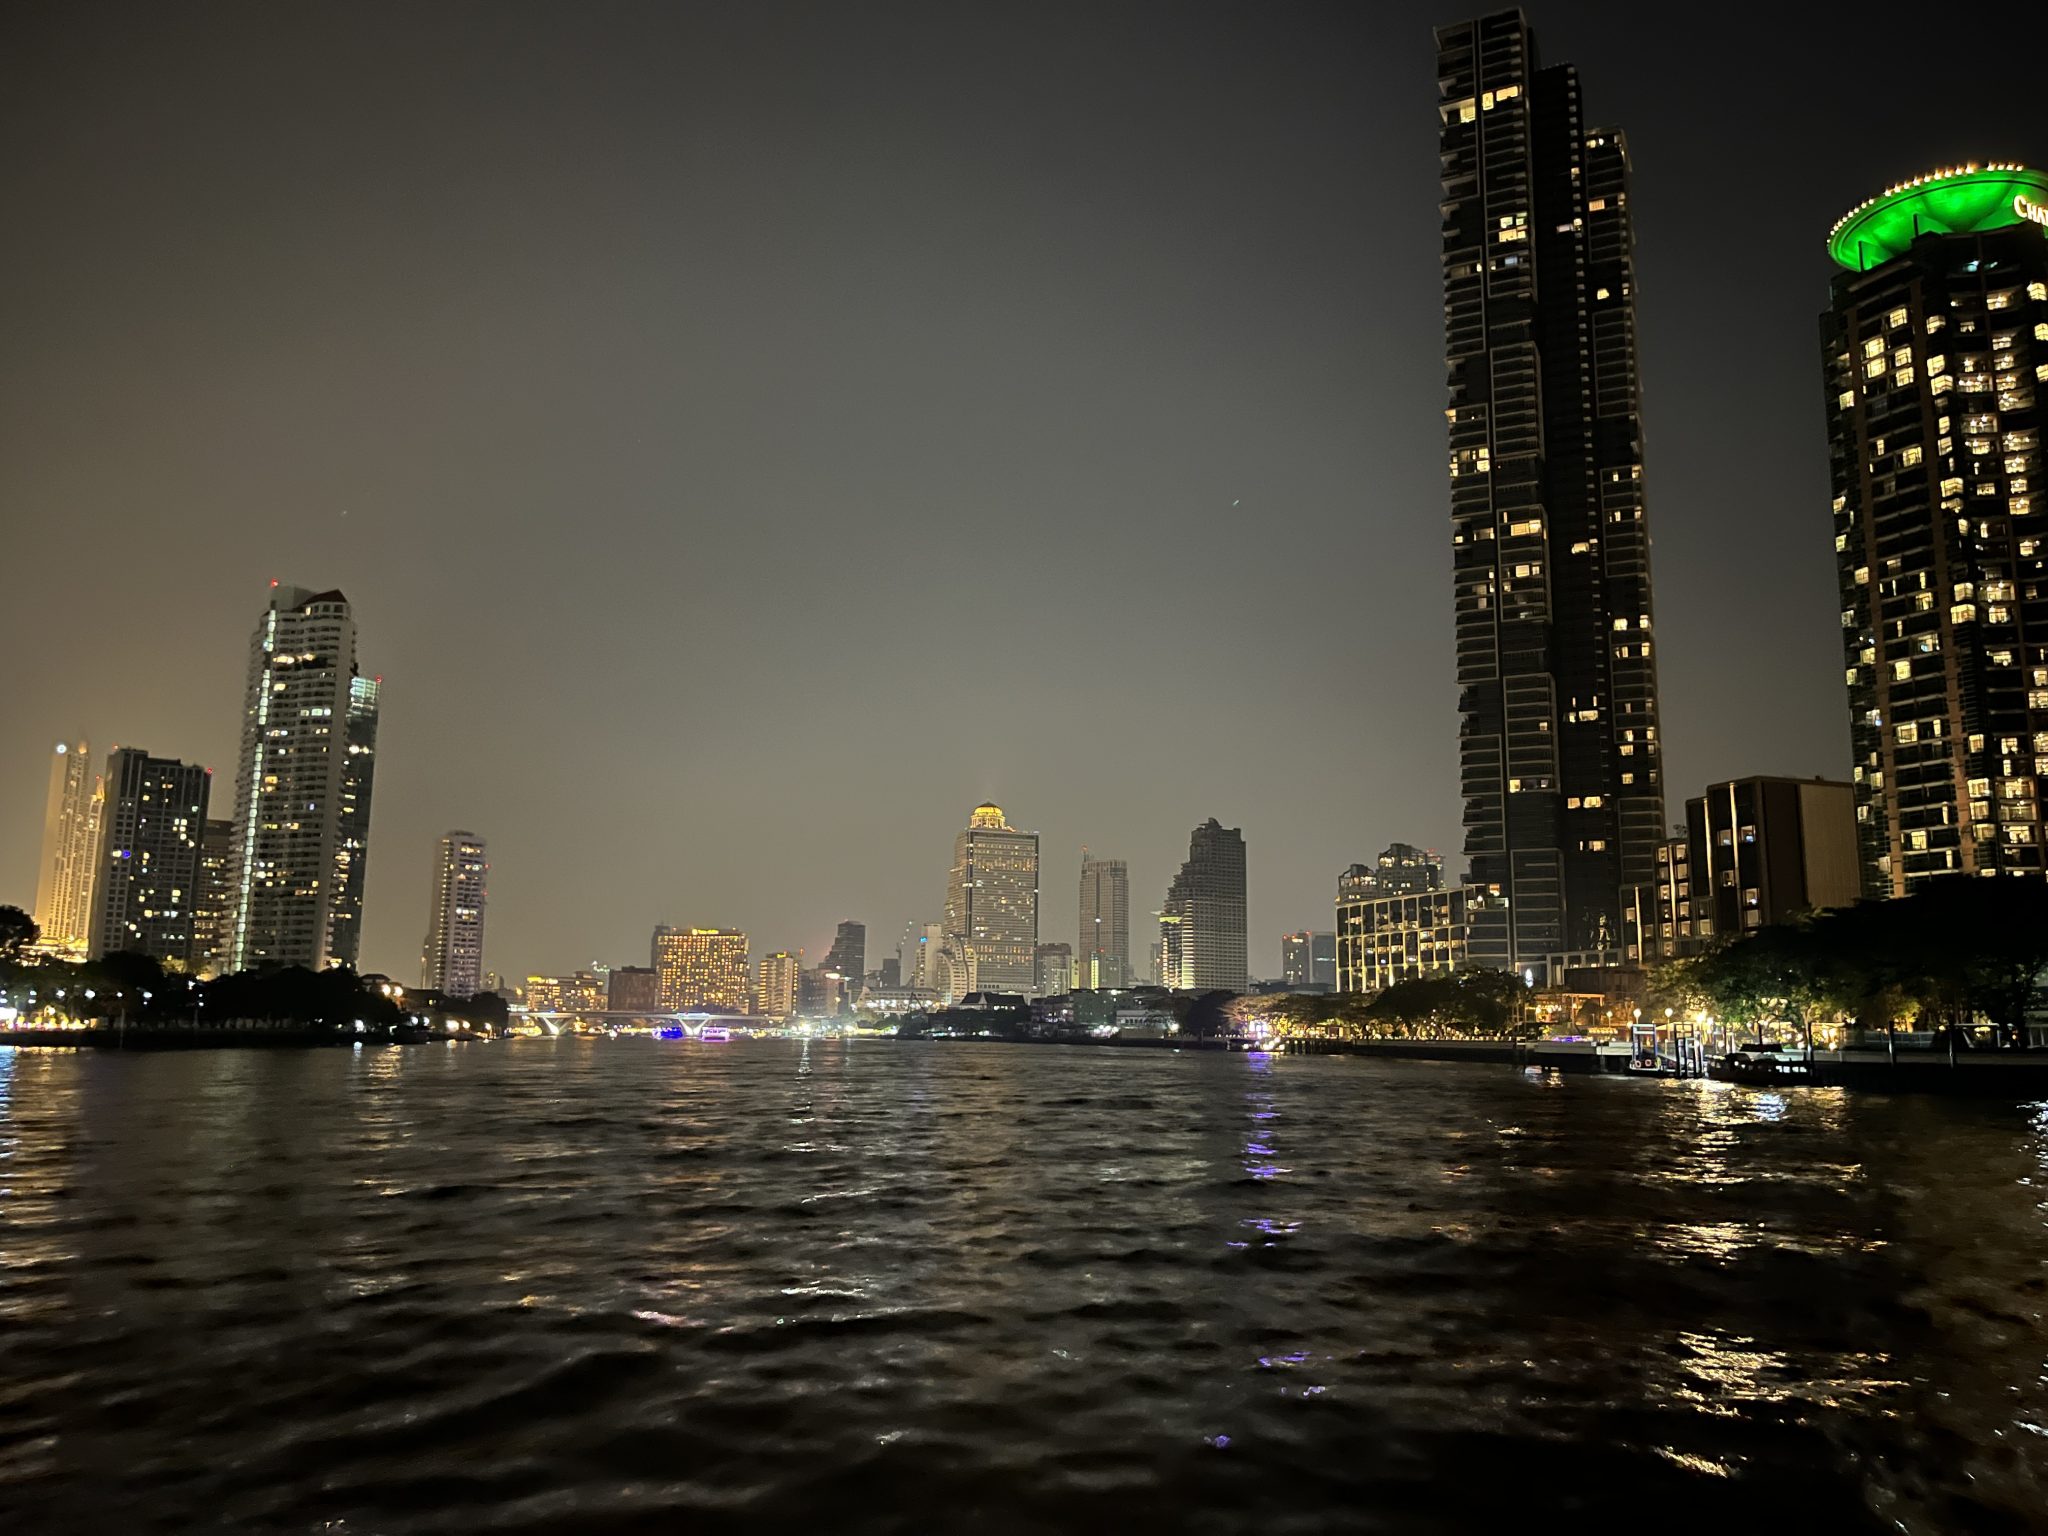 Chao Phraya River at night, Bangkok, Thailand